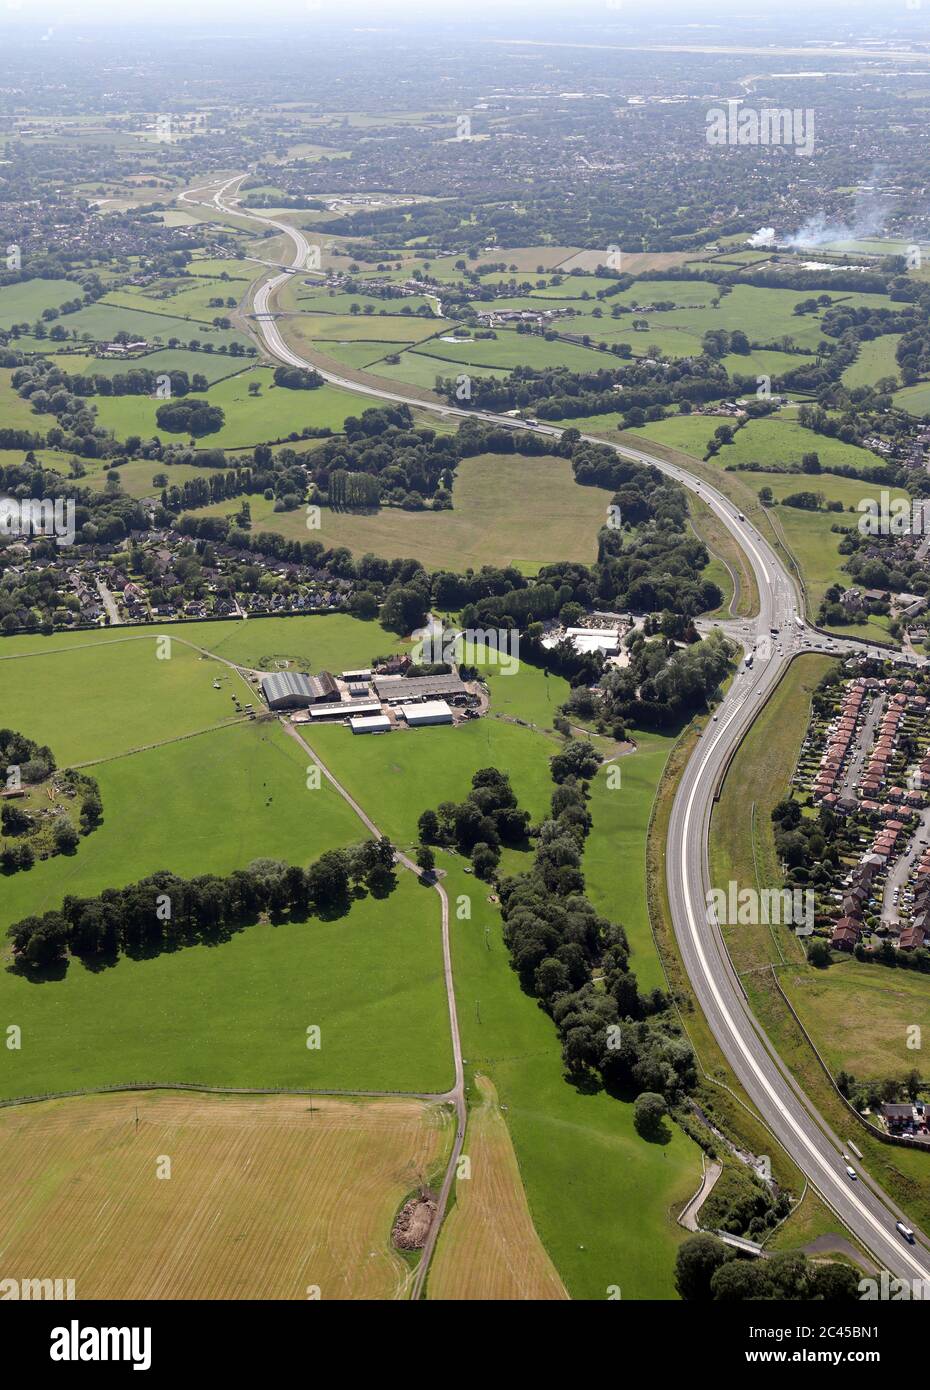 Vista aérea de la carretera de ayuda al aeropuerto de Manchester y la carretera Eastern Link A555, tomada desde el este del cruce con la A523 en Poynton Foto de stock